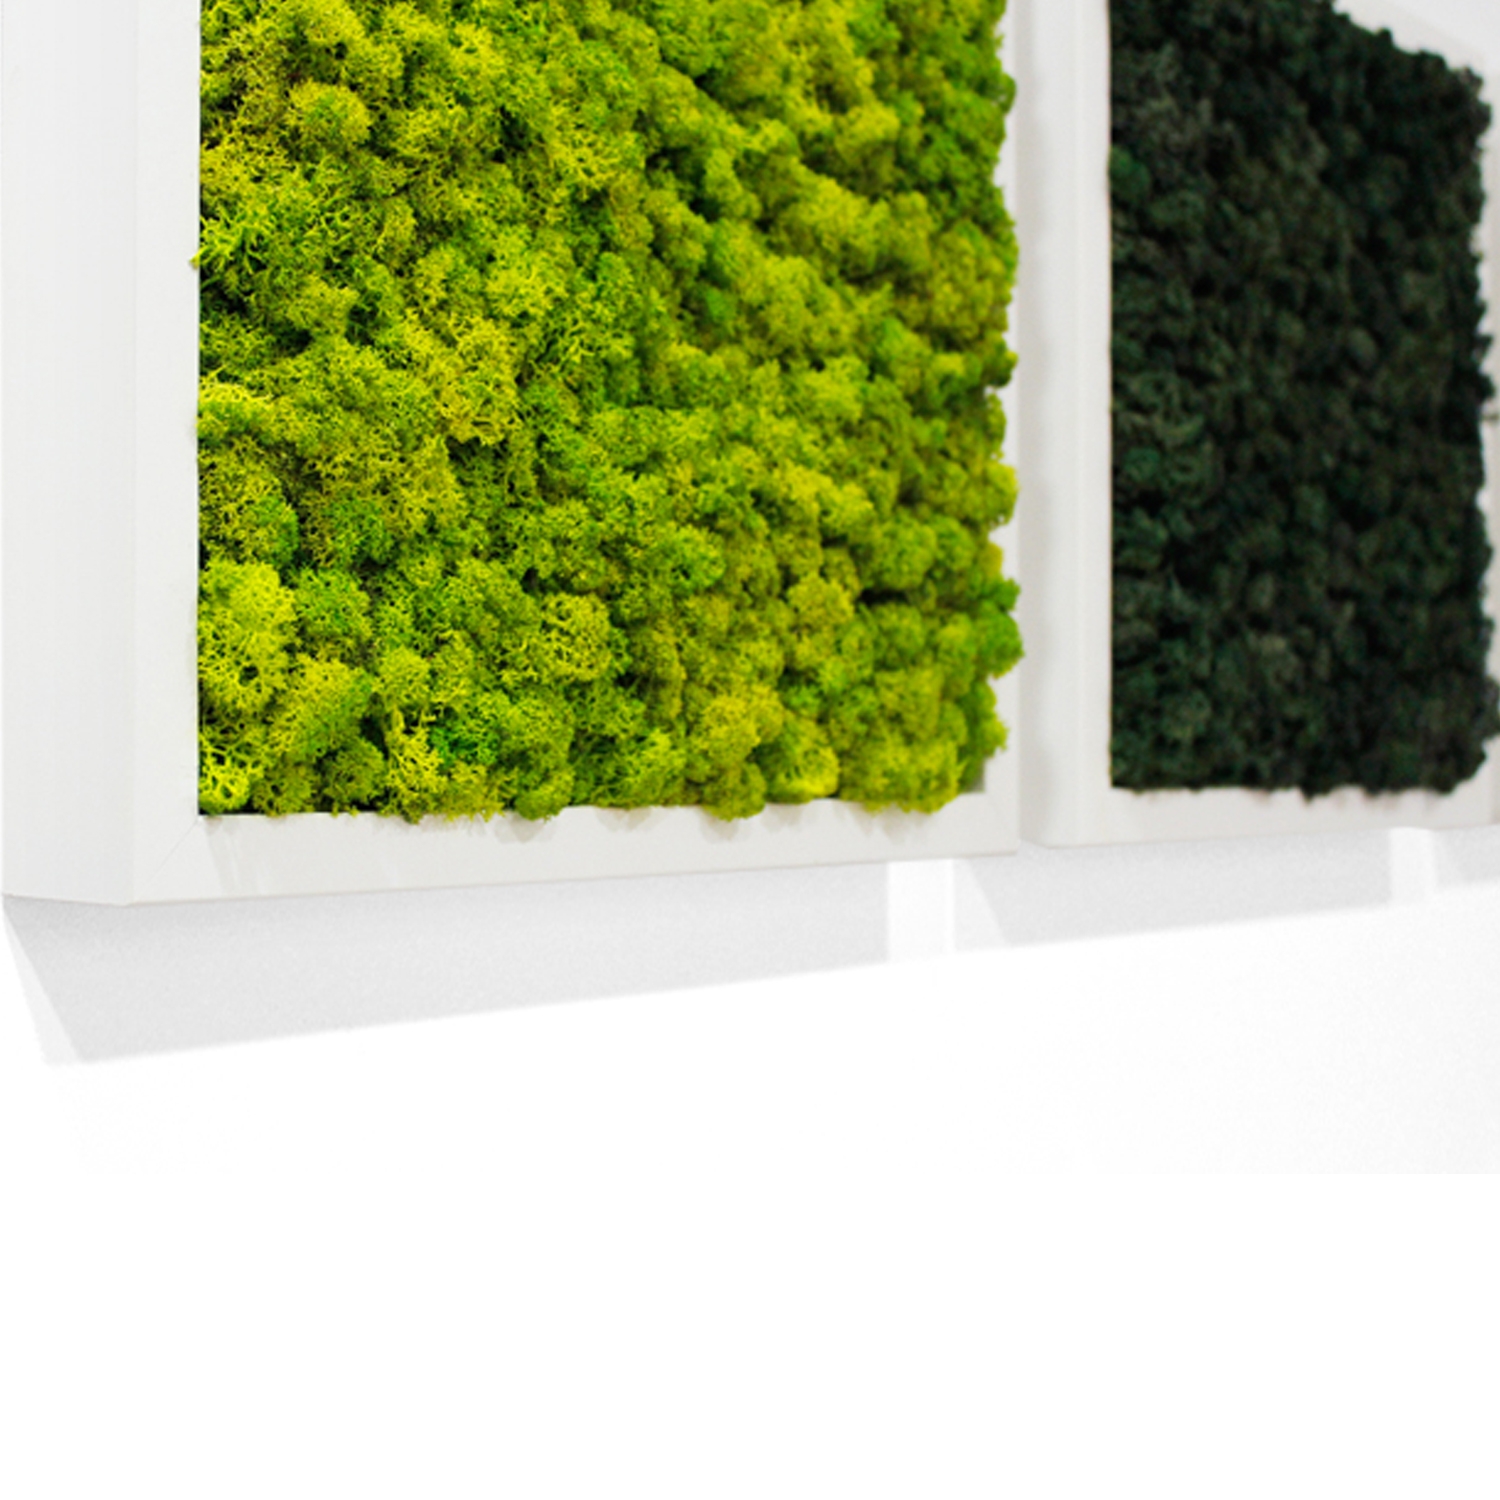 스칸디아모스액자 프라모 프레임_화이트 ( 25색상 )실내 공기정화식물 벽면인테리어소품 천연이끼 스칸디아모스 식물액자 플랜테리어